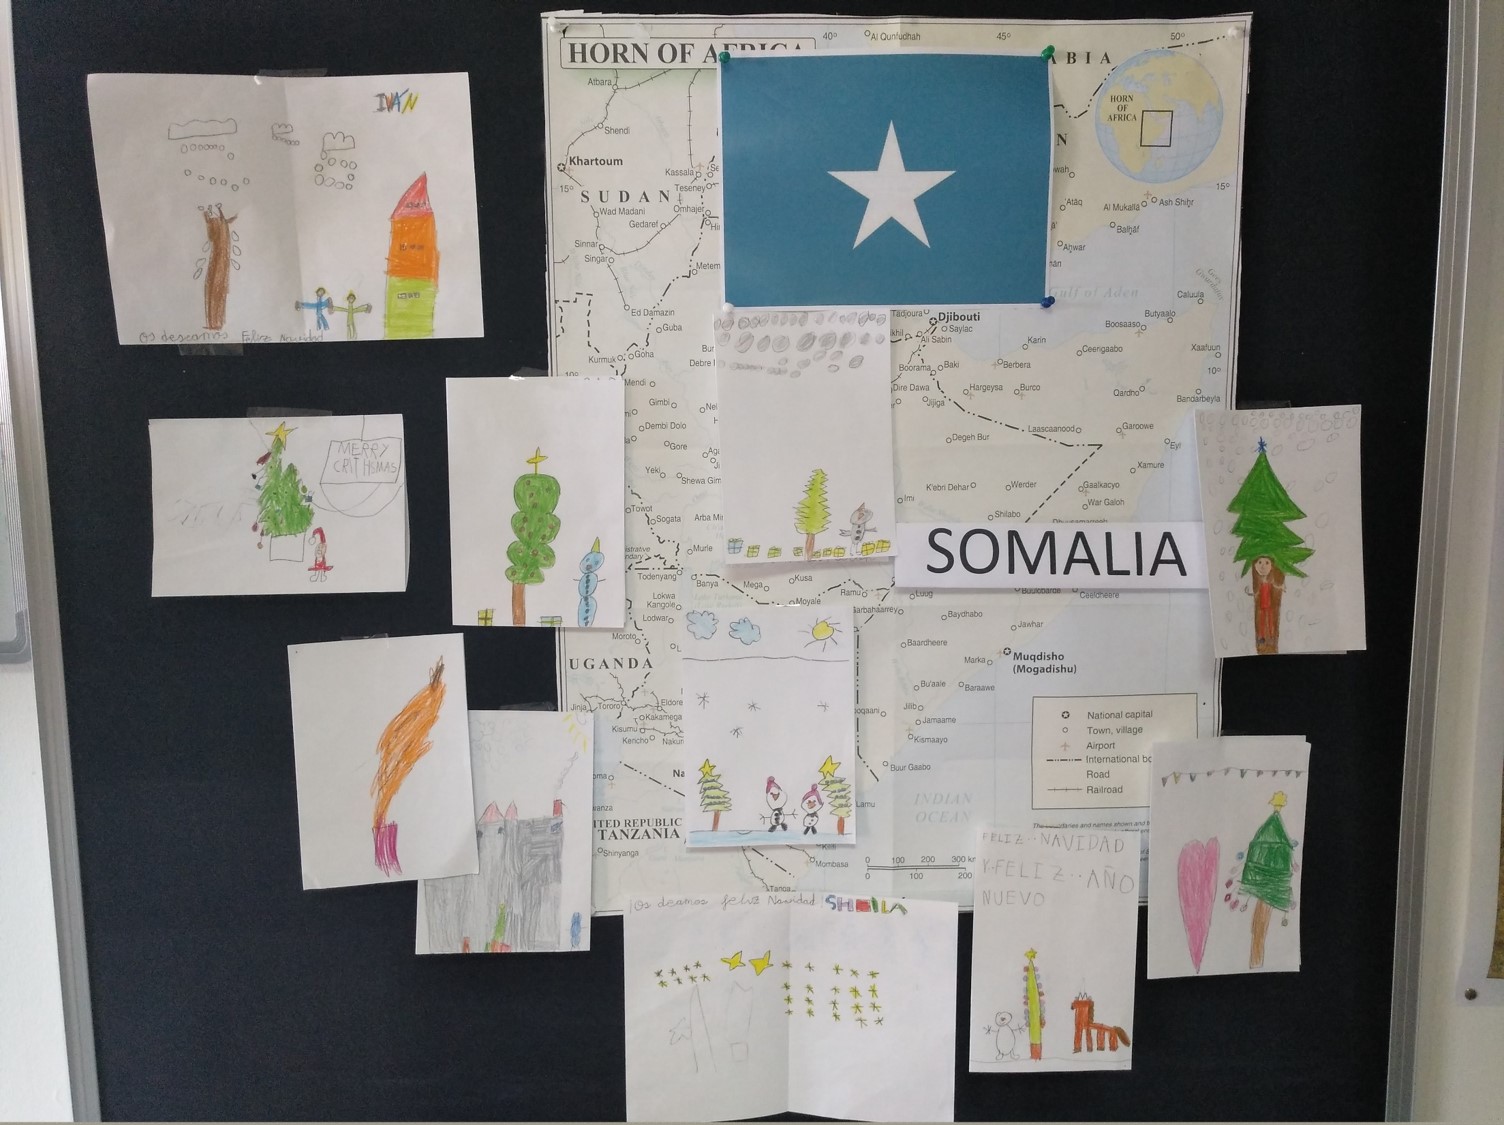 La Navidad llega a Somalia desde Jaén